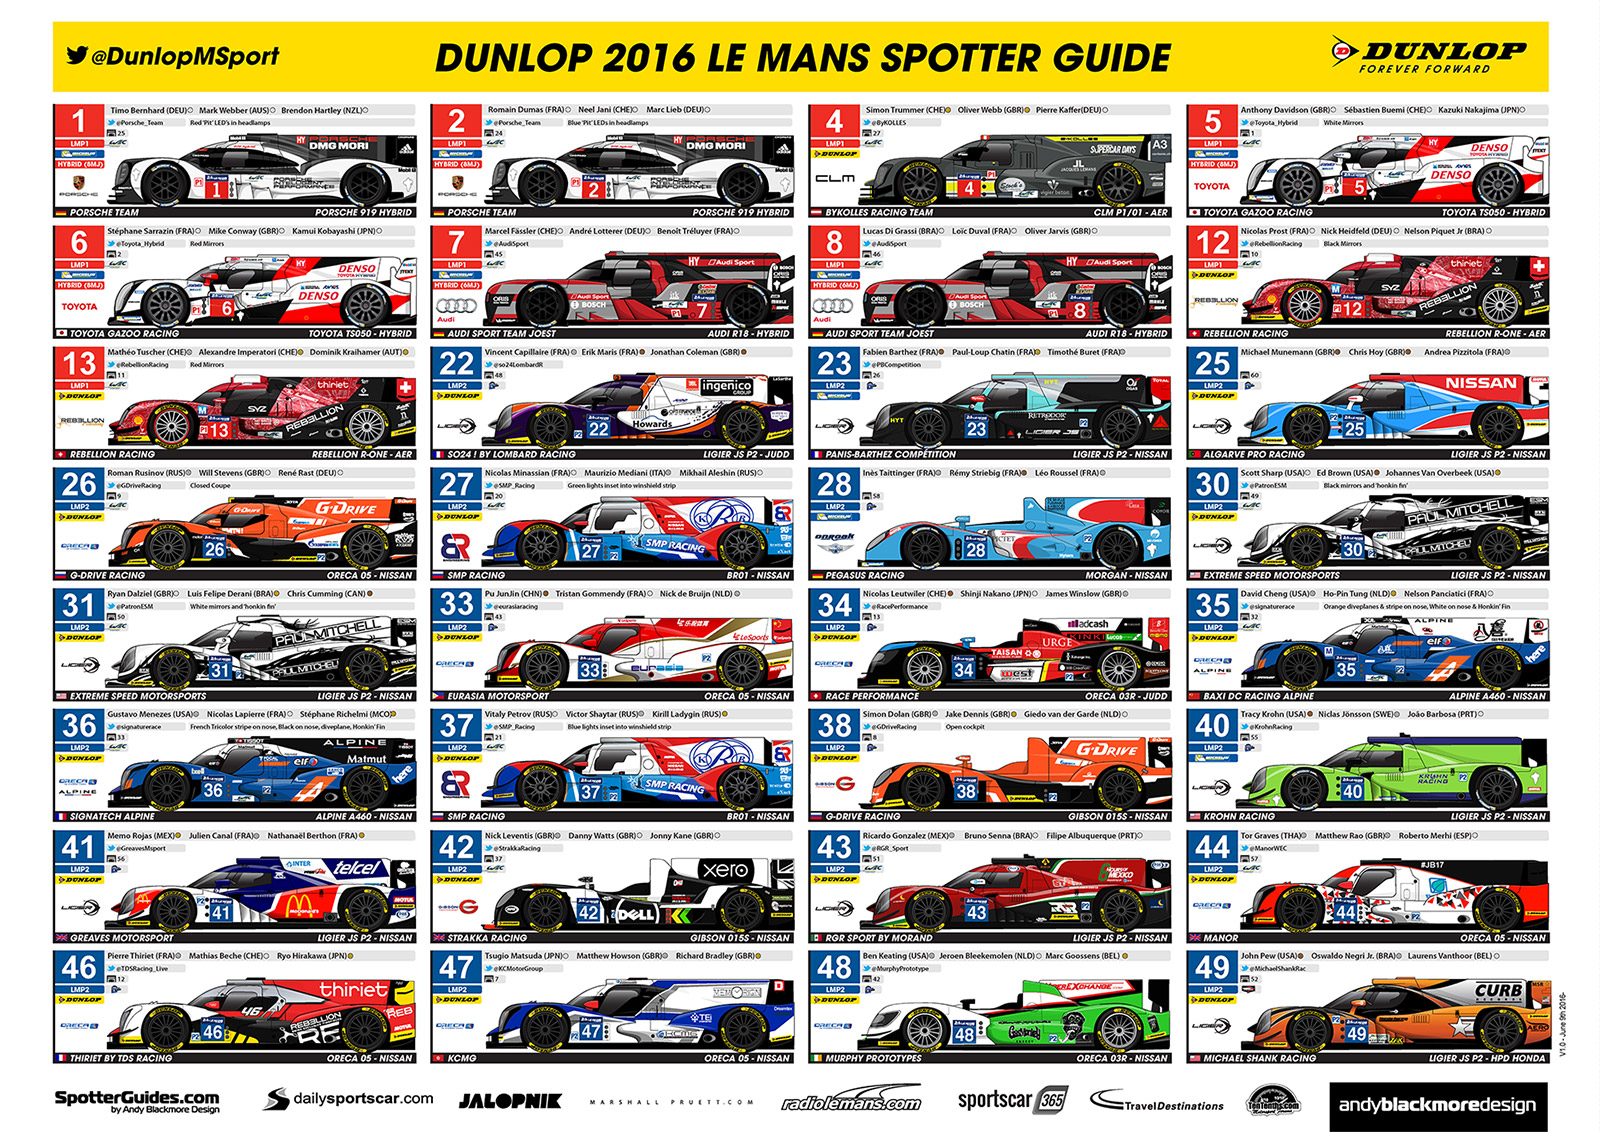 Le Mans Spotter Guide 2016